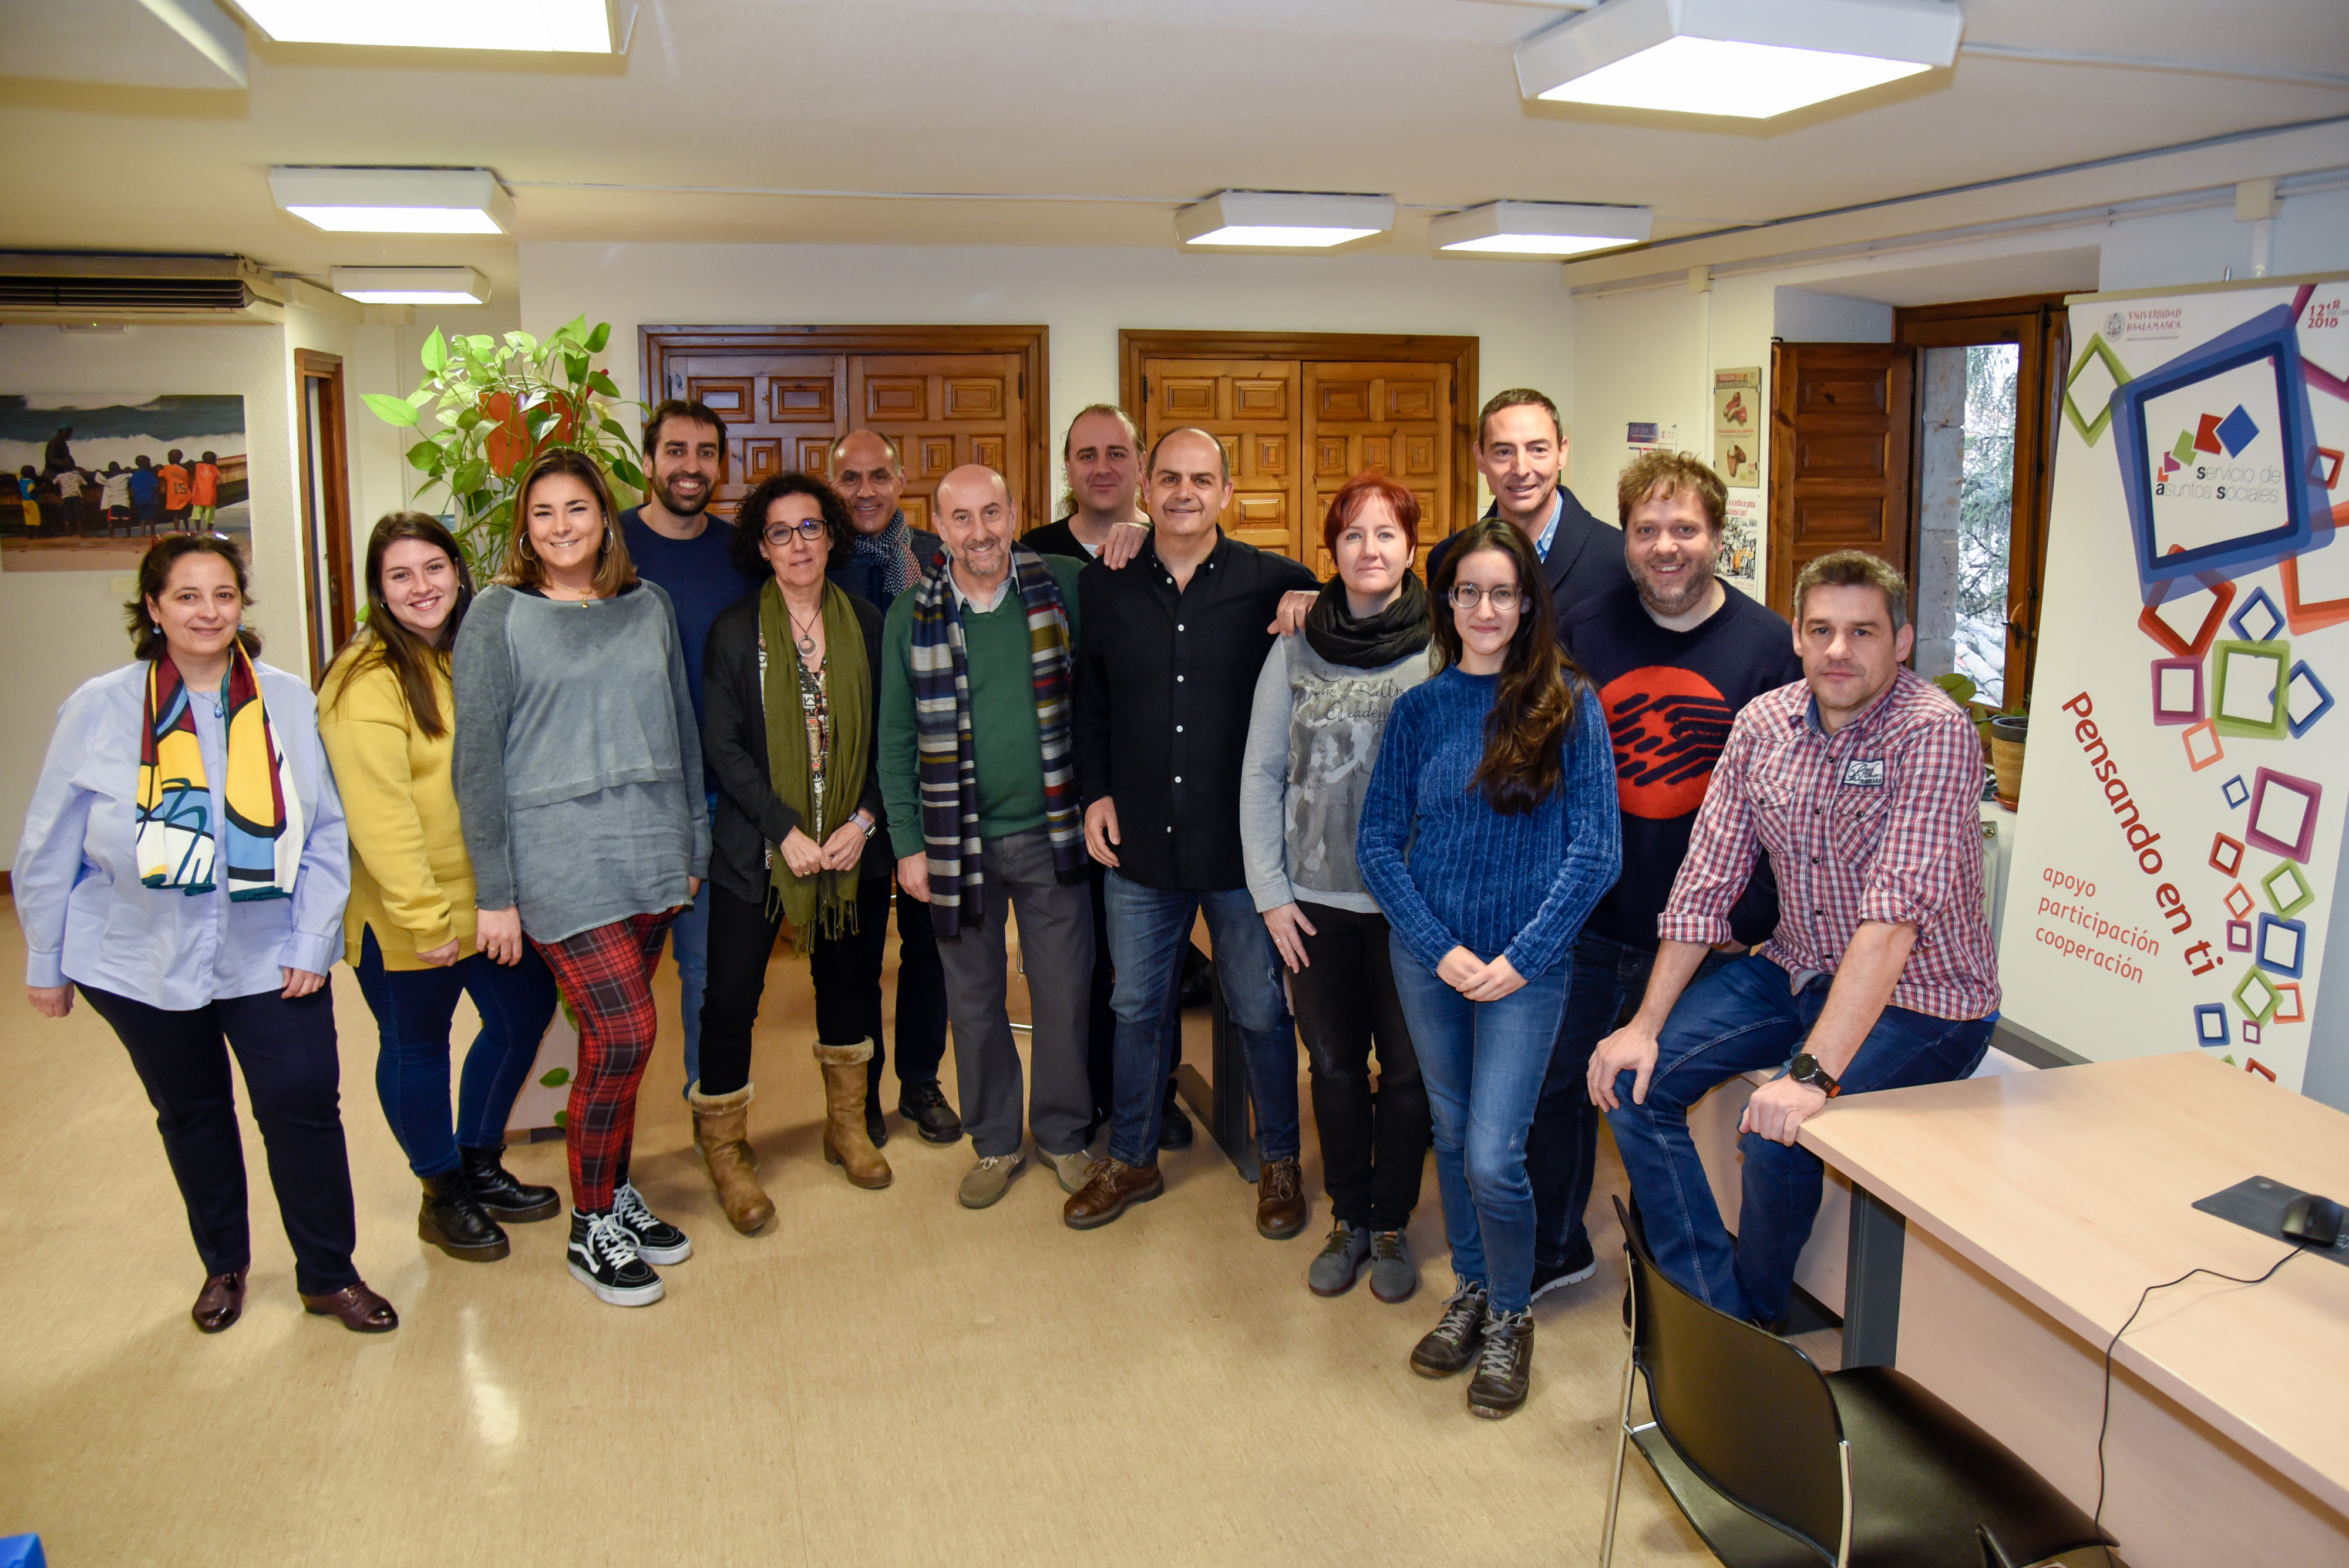 La Universidad de Salamanca celebra 20 años de apoyo al universitario y a la sociedad a través del Servicio de Asuntos Sociales